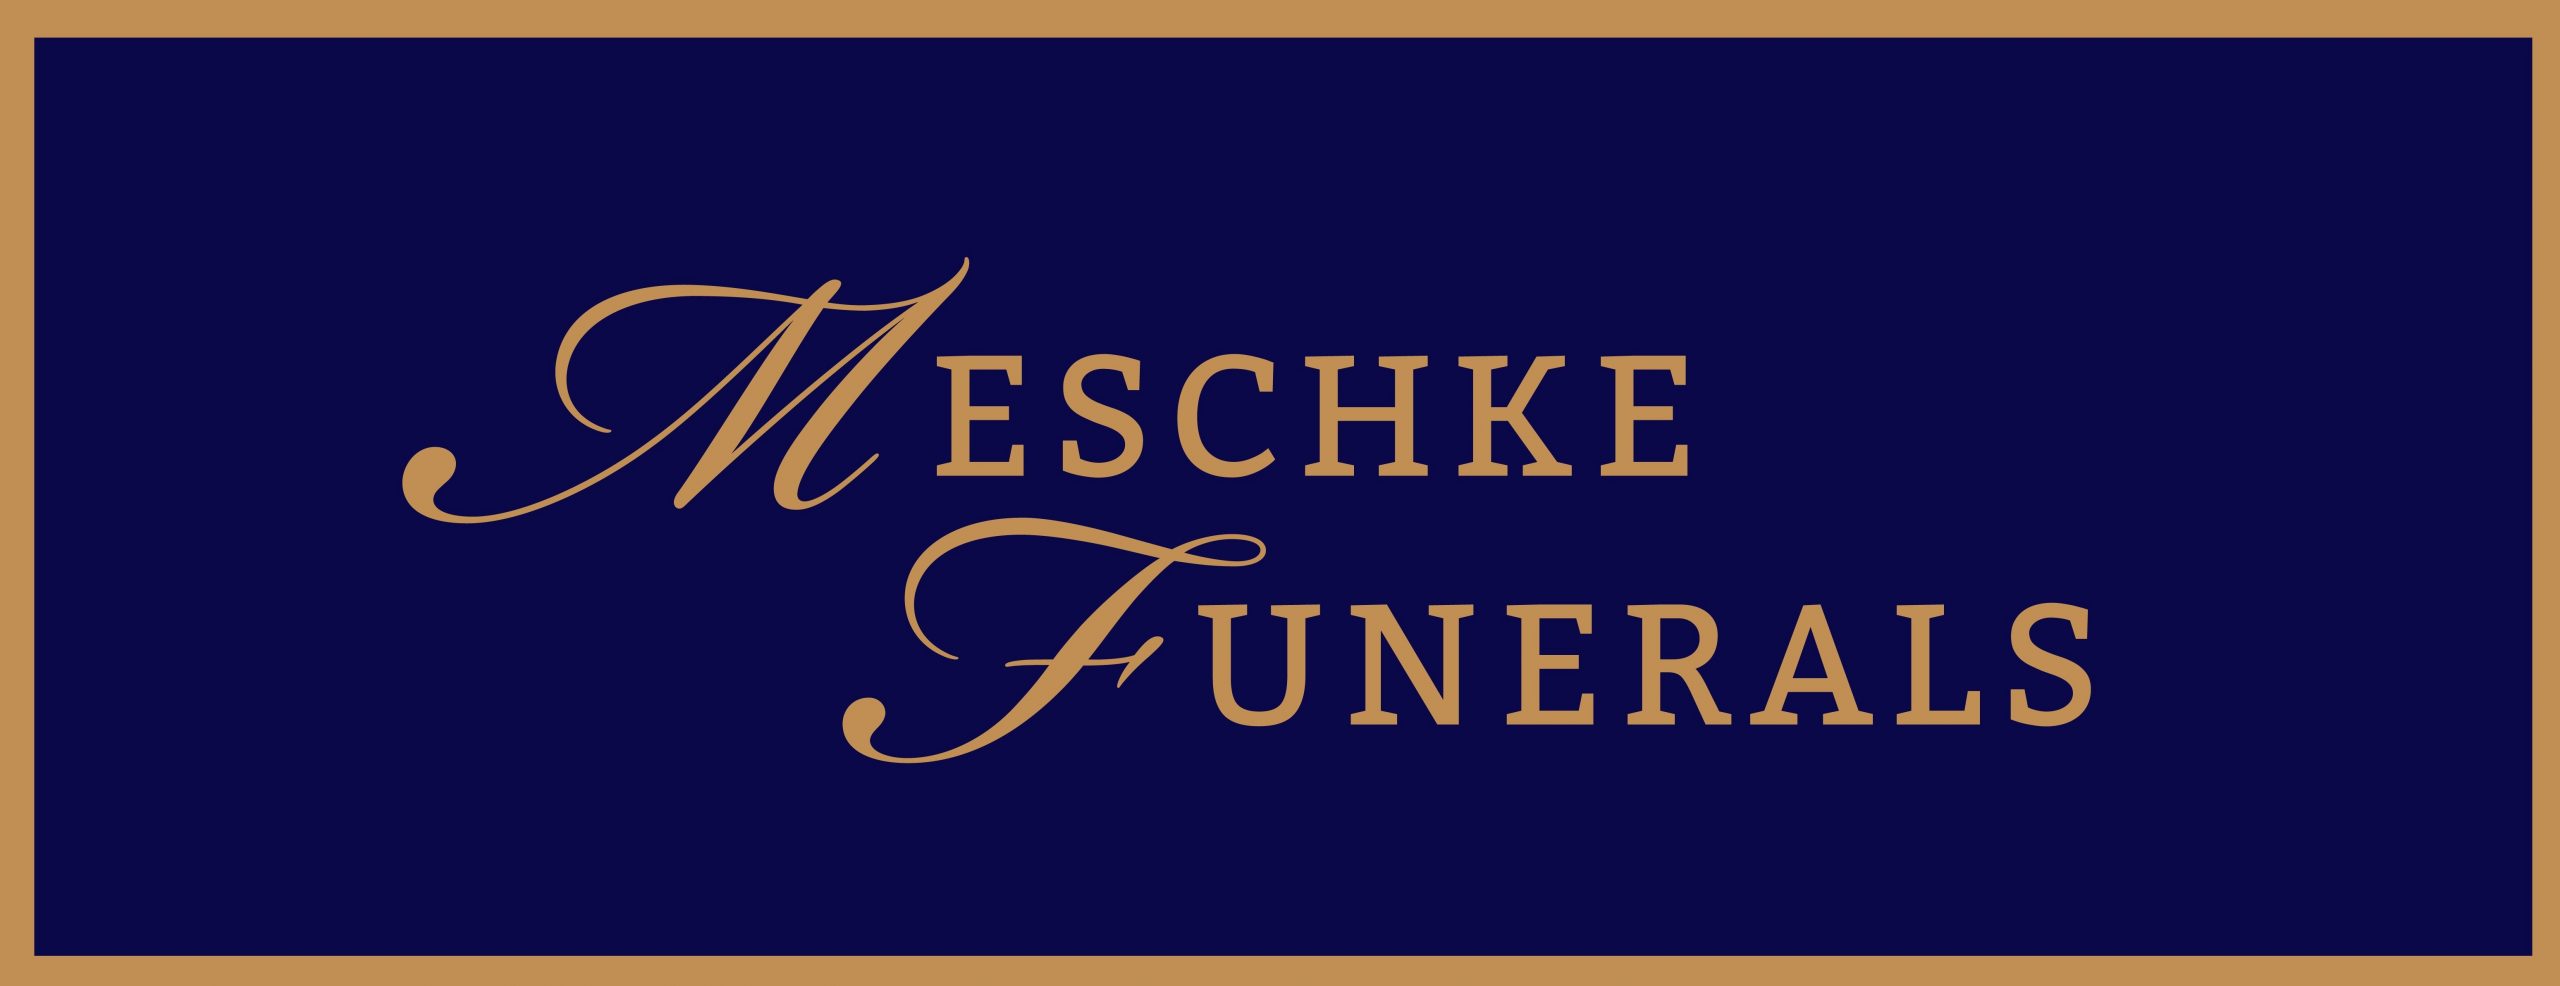 Meschke Funerals